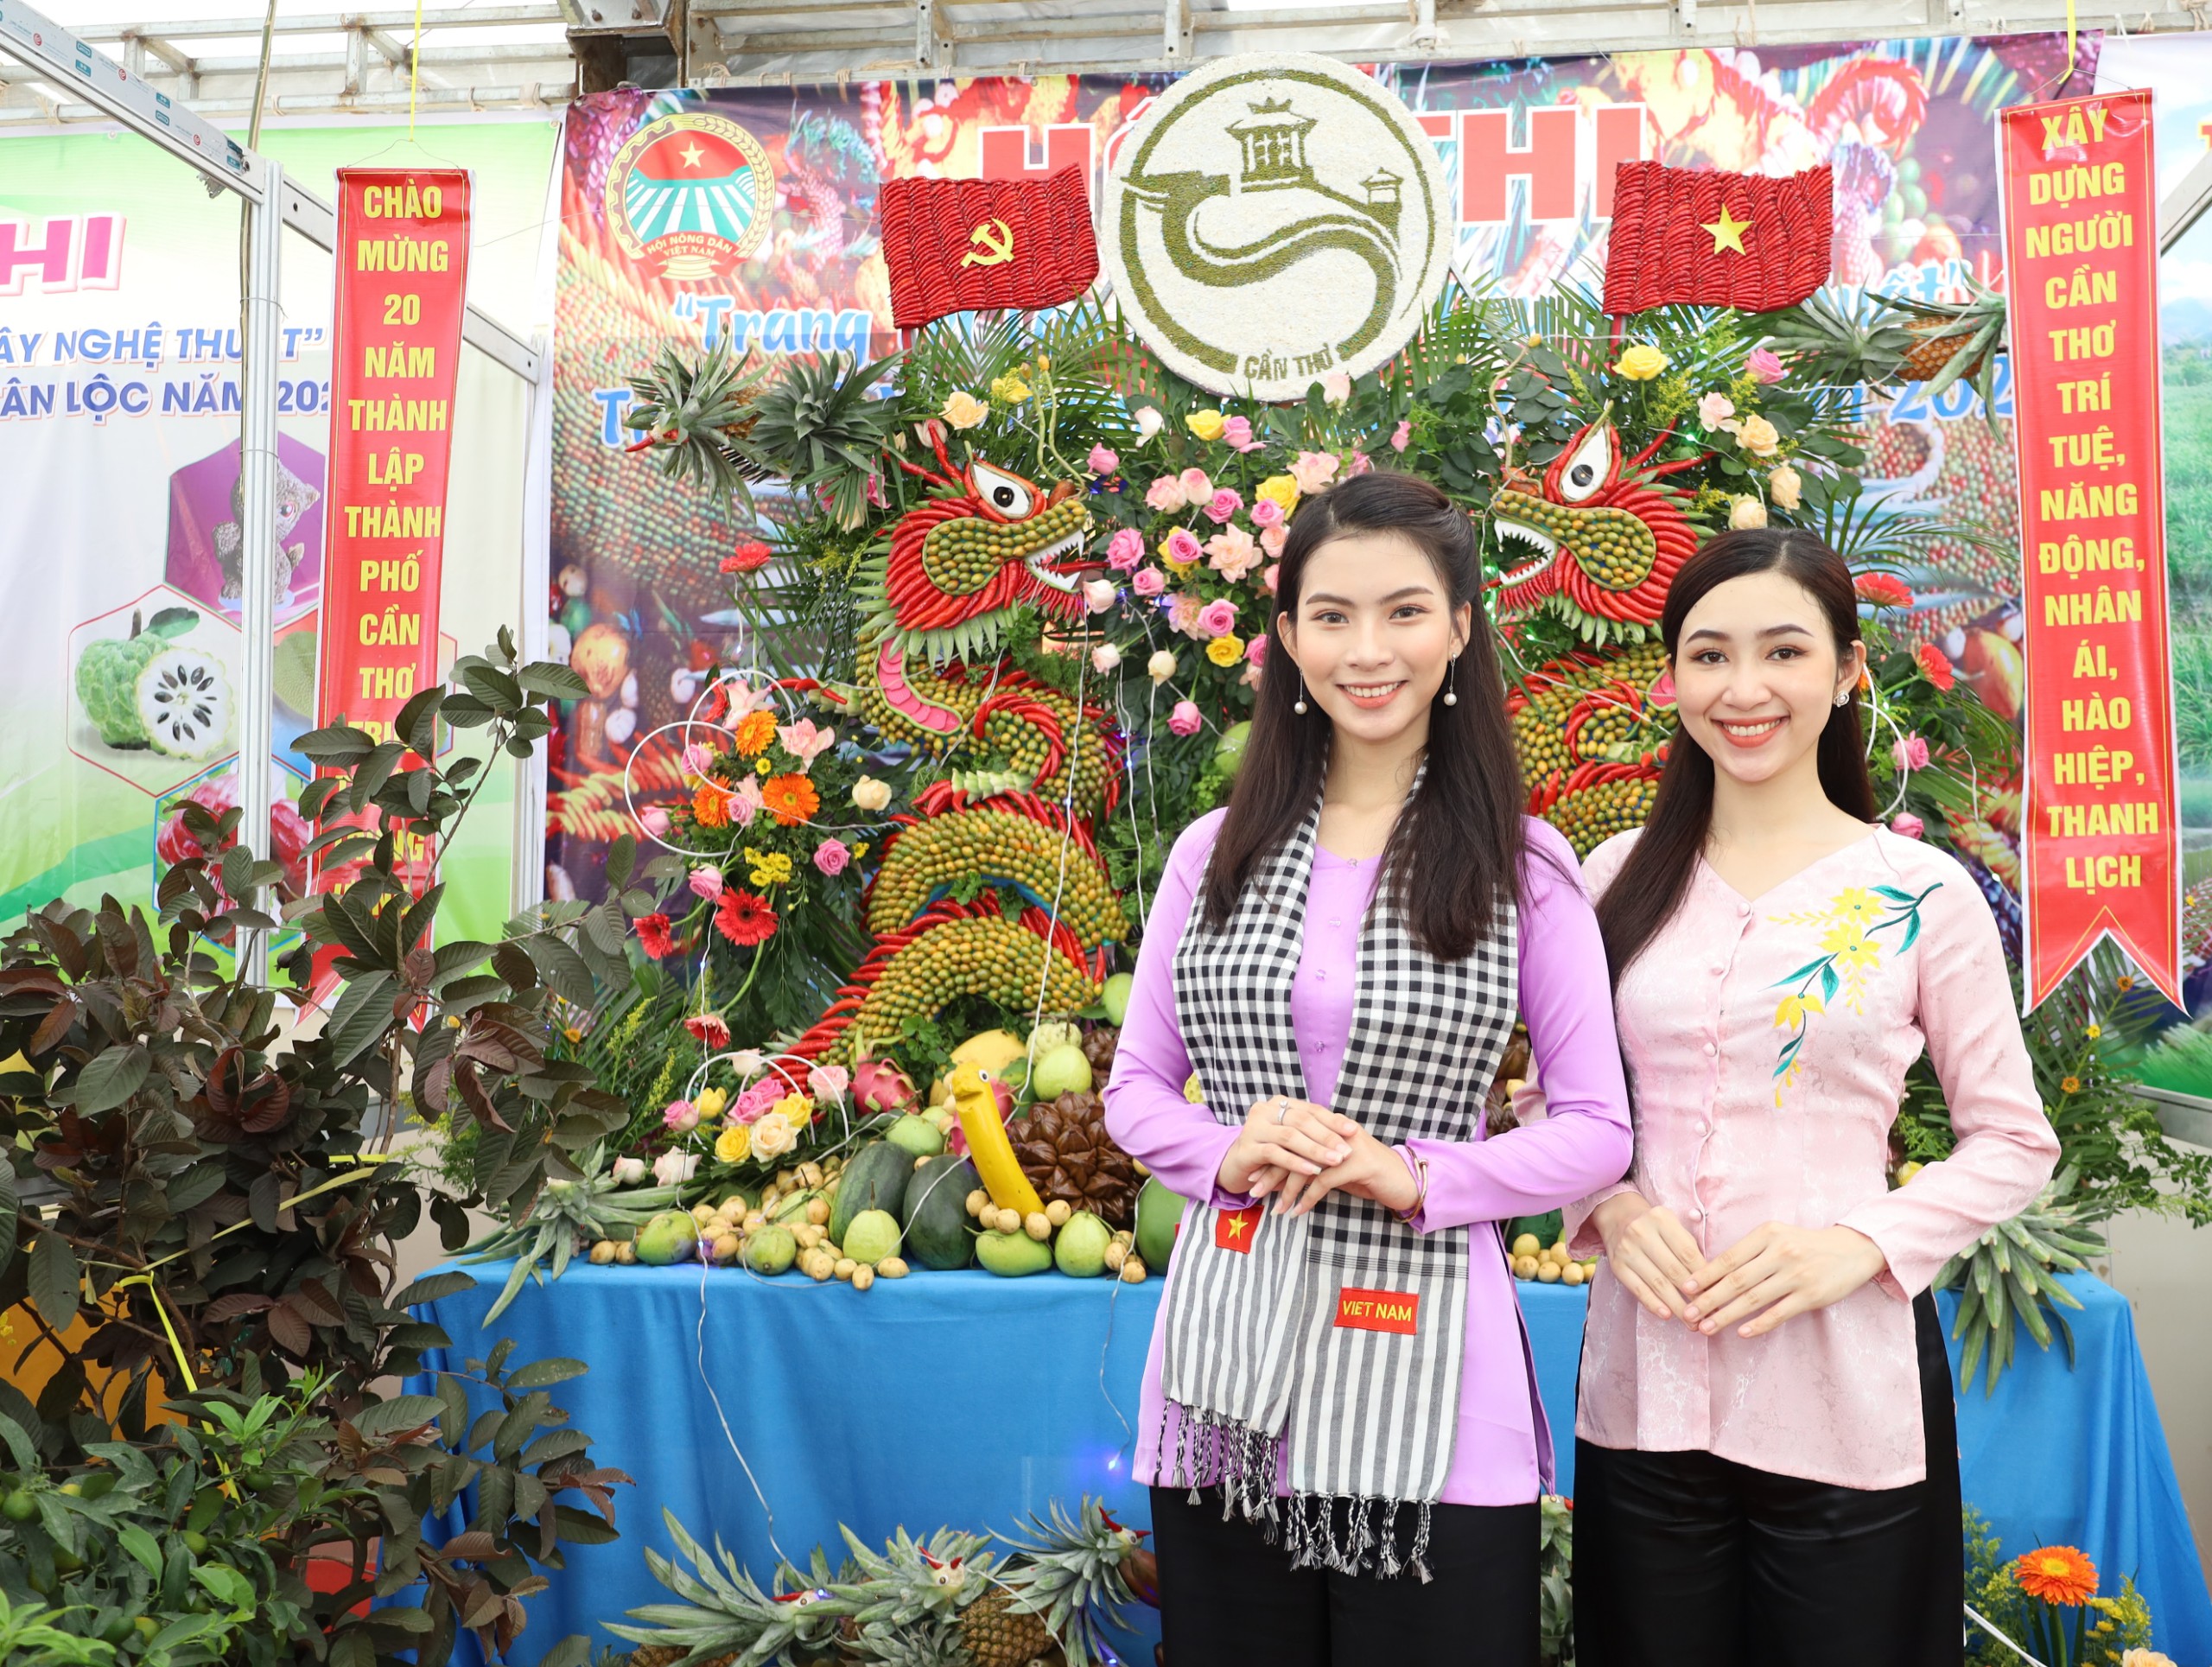 Lễ hội Vườn trái cây Tân Lộc là nơi hội tụ trái thơm, quả ngọt, các loại đặc sản đặc trưng miền sông nước.